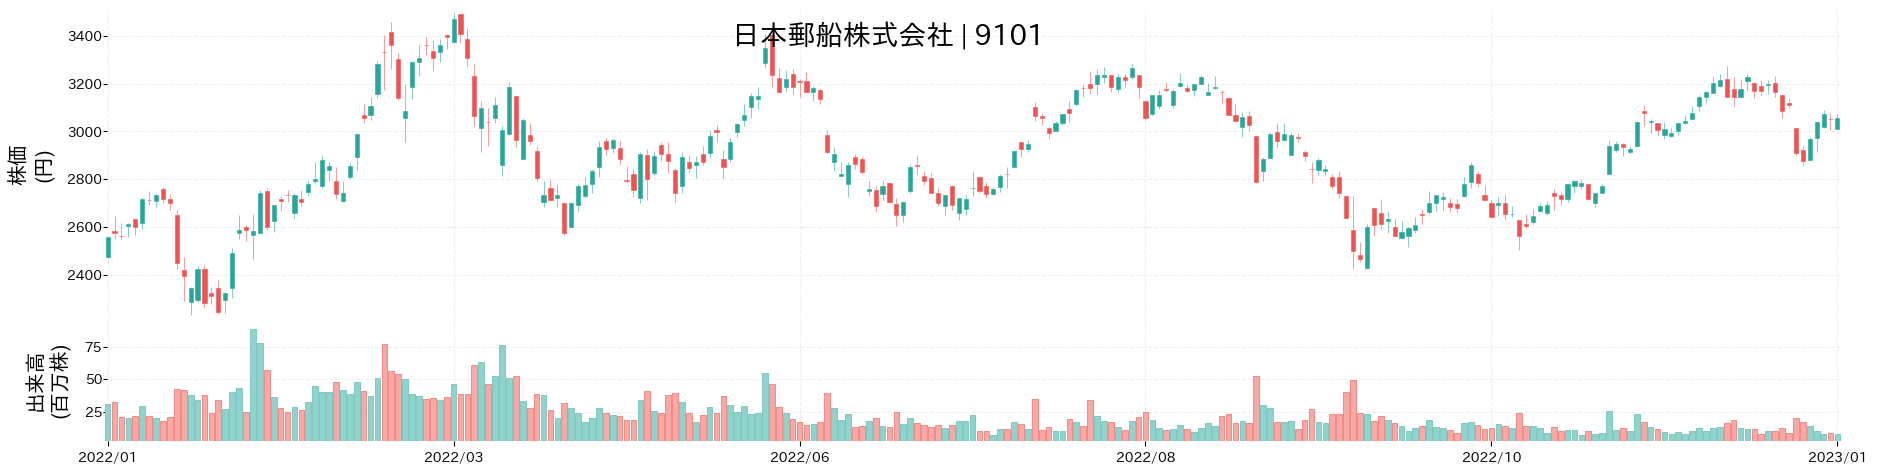 日本郵船の株価推移(2022)